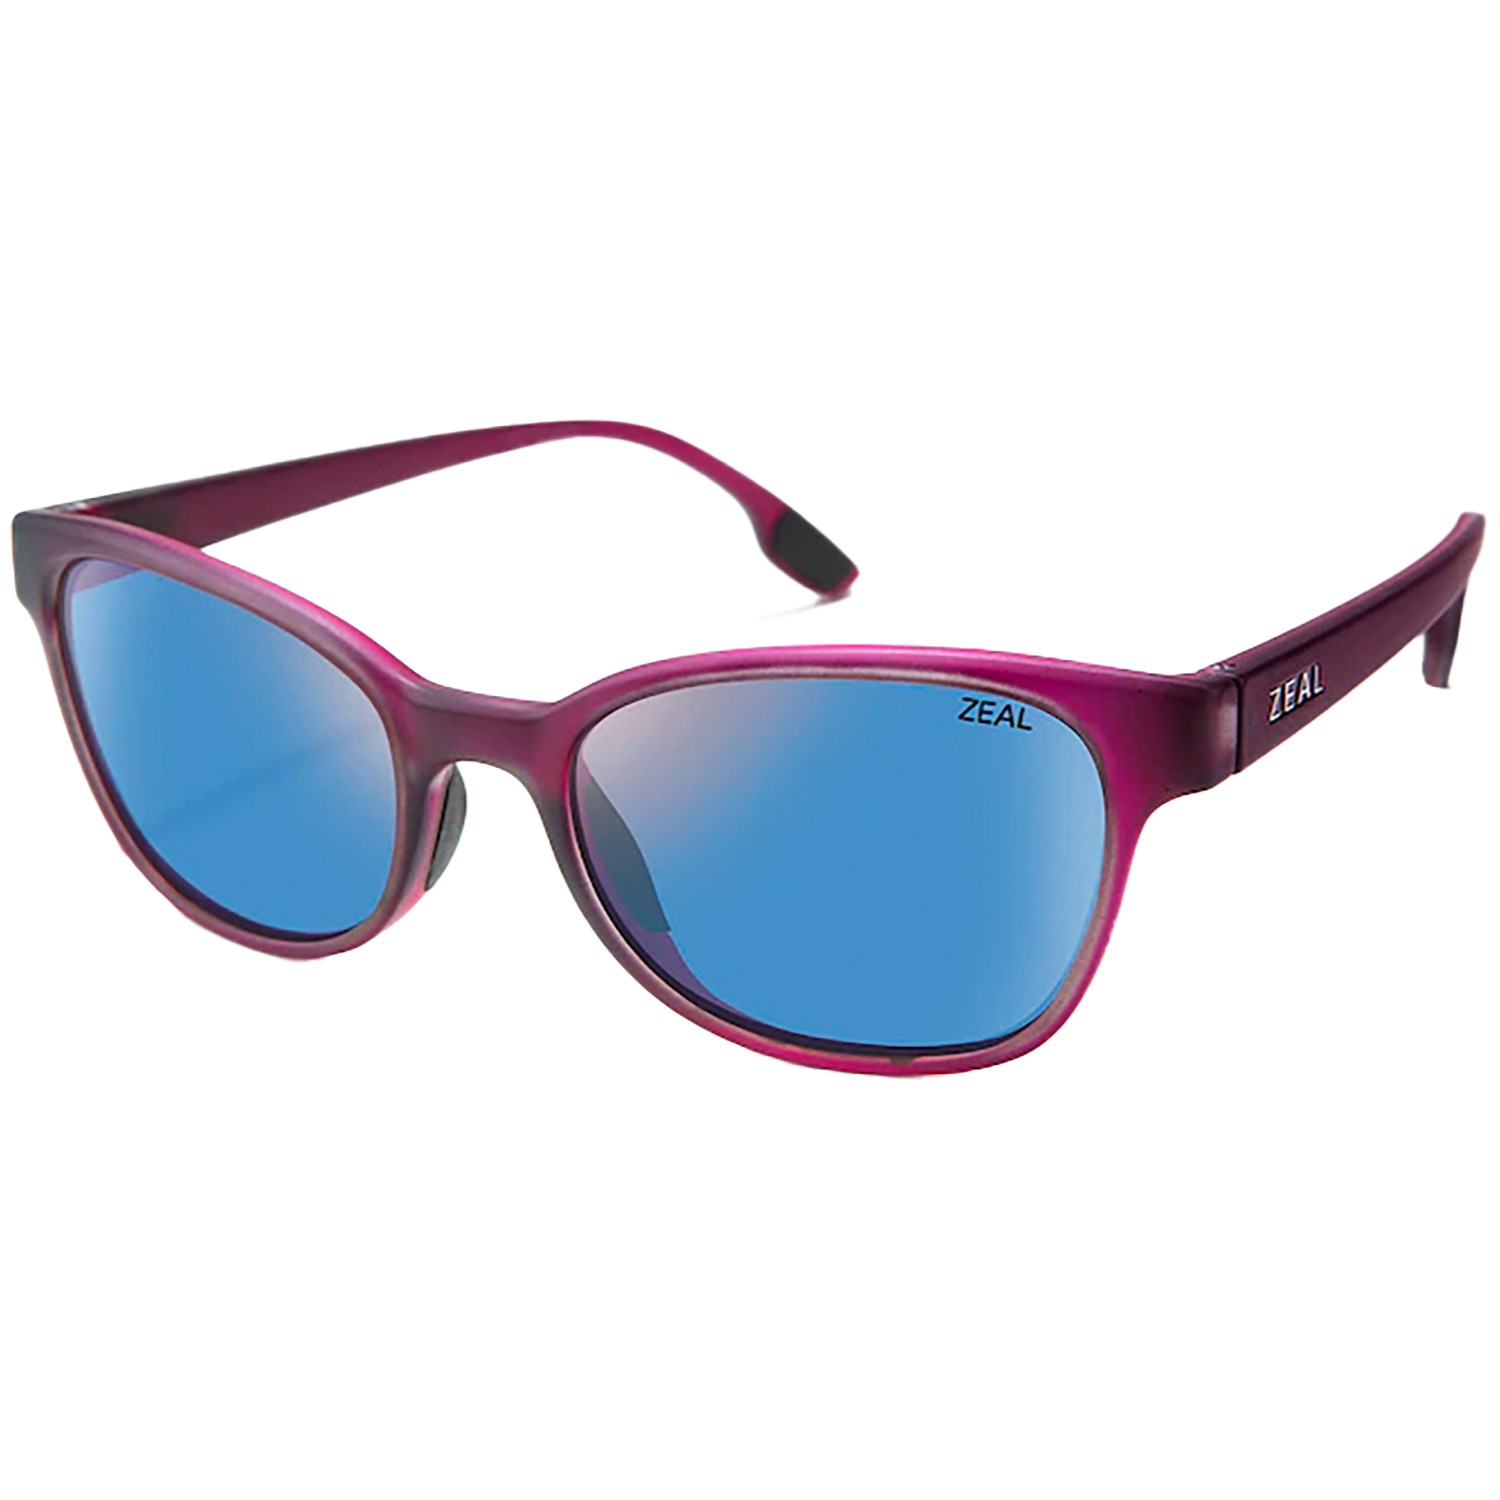 Солнцезащитные очки Zeal Avon, бордовый/синий